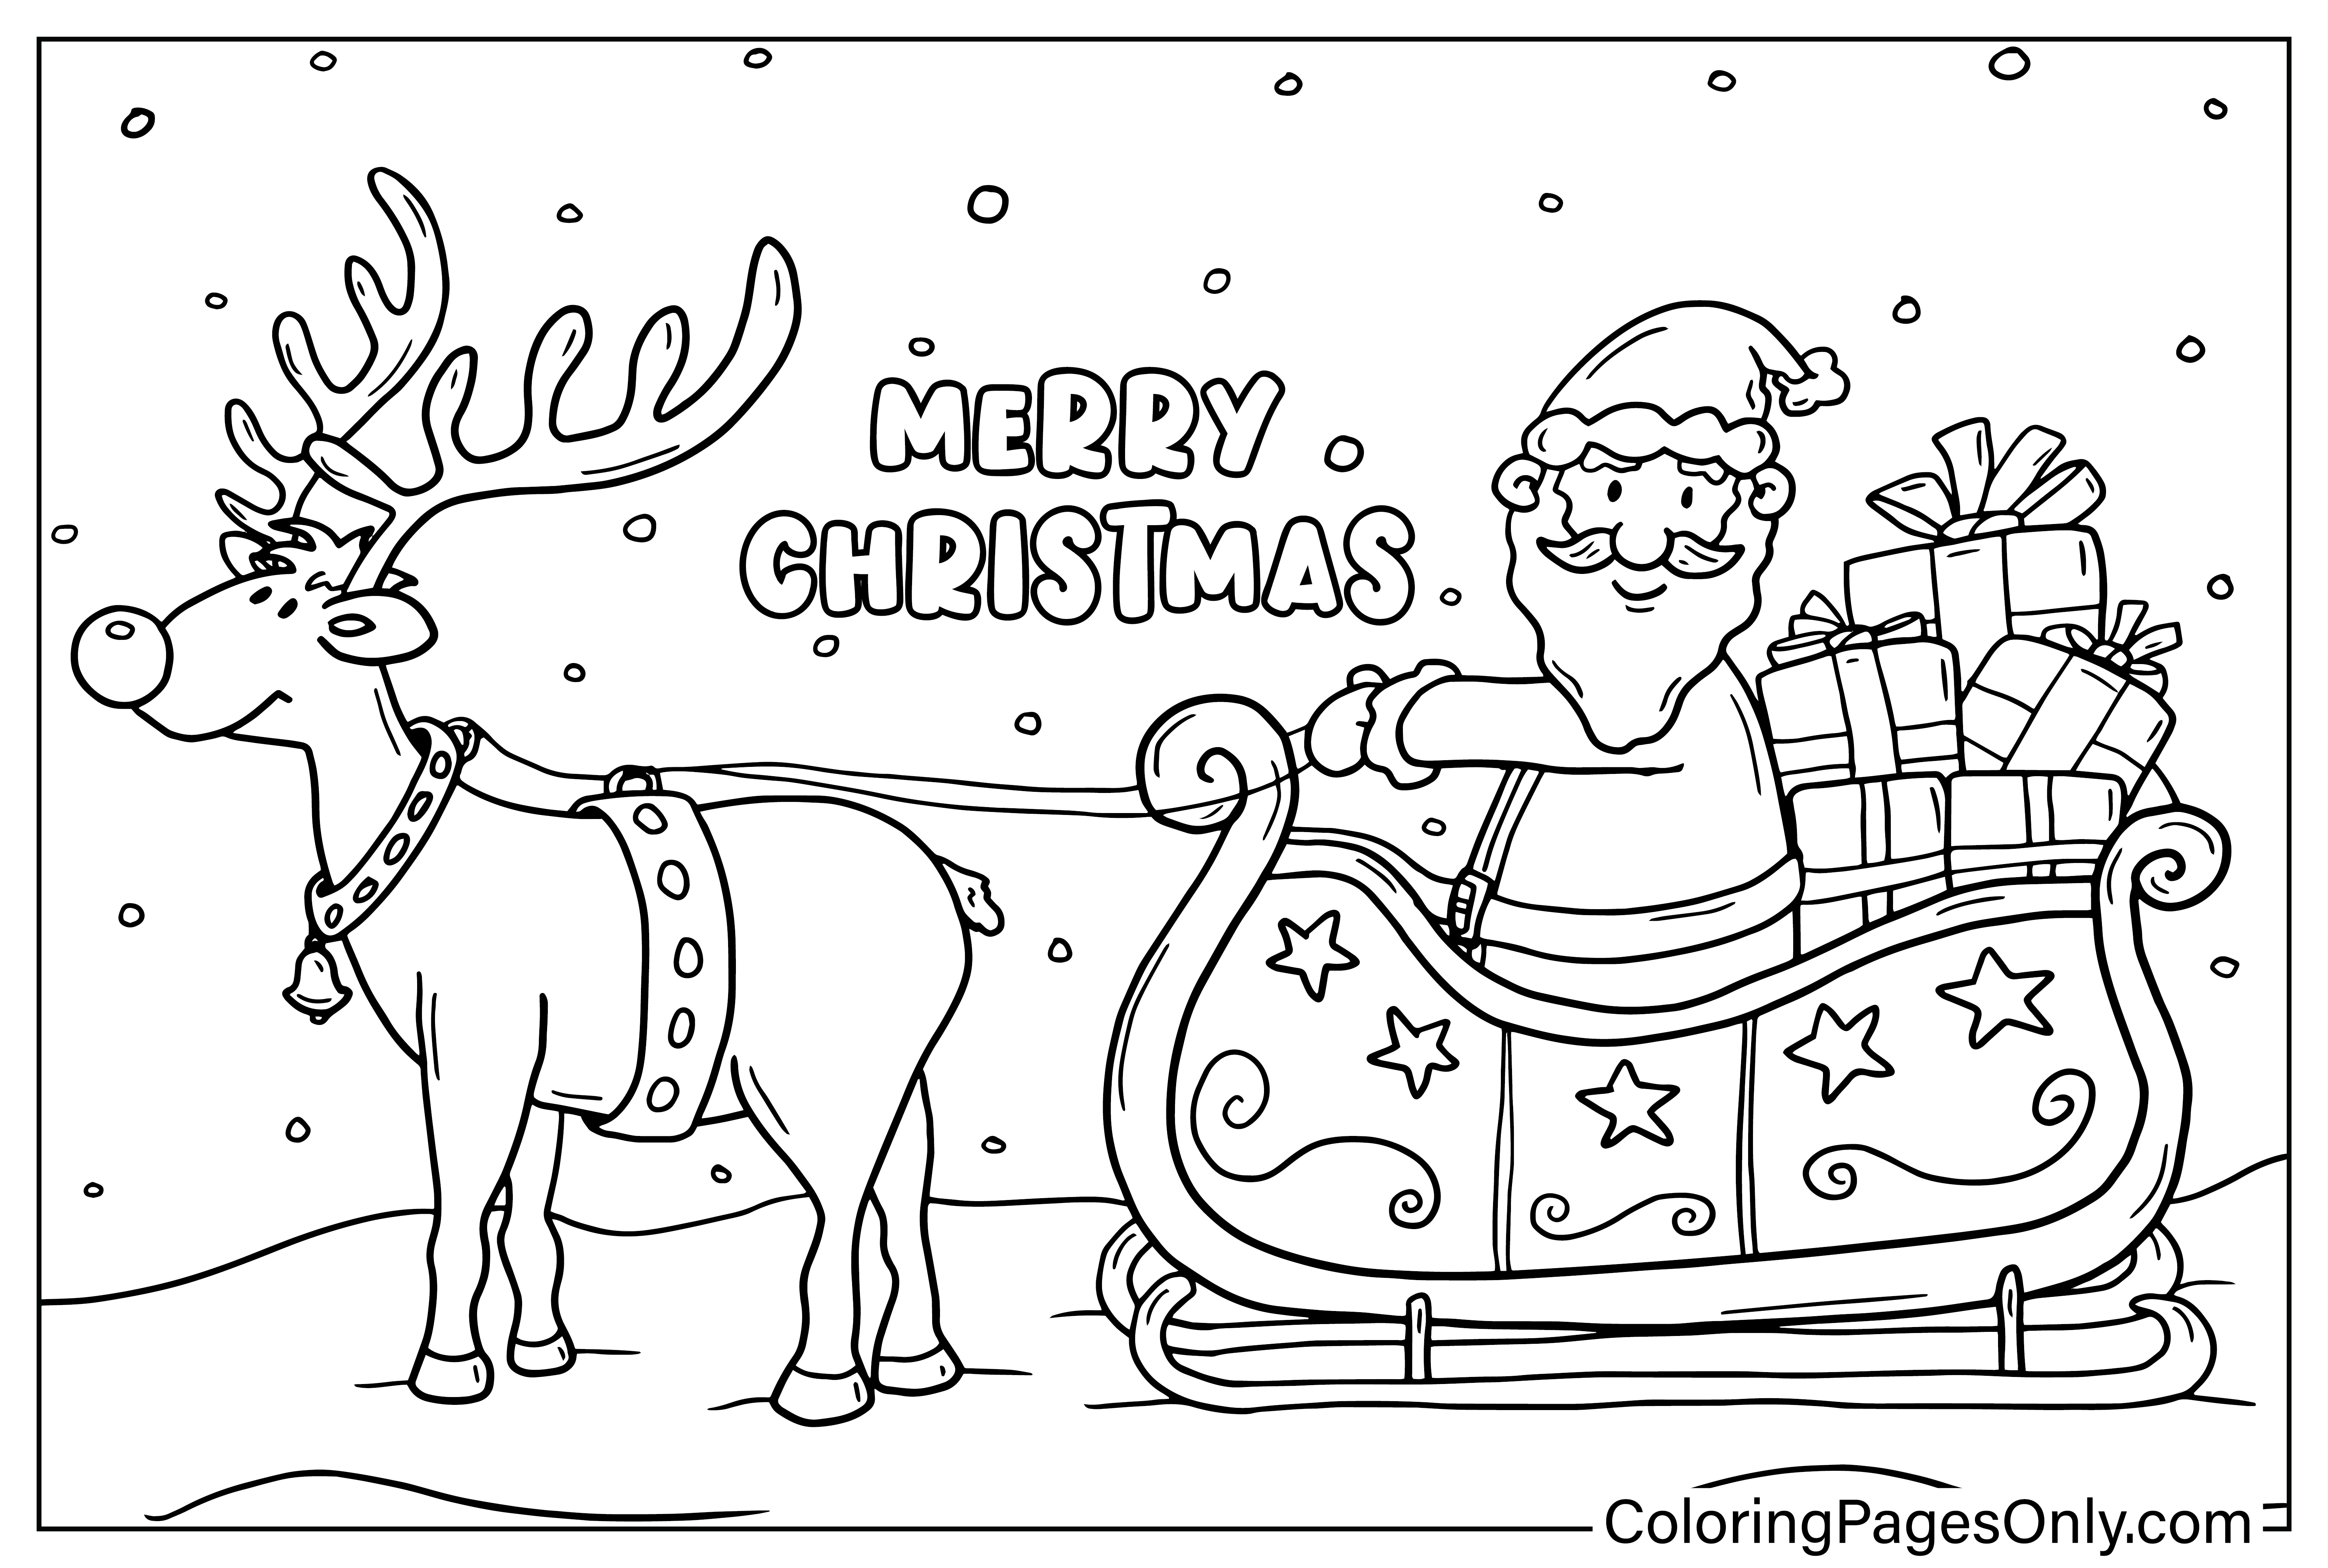 Página para colorir de renas e Papai Noel do Papai Noel